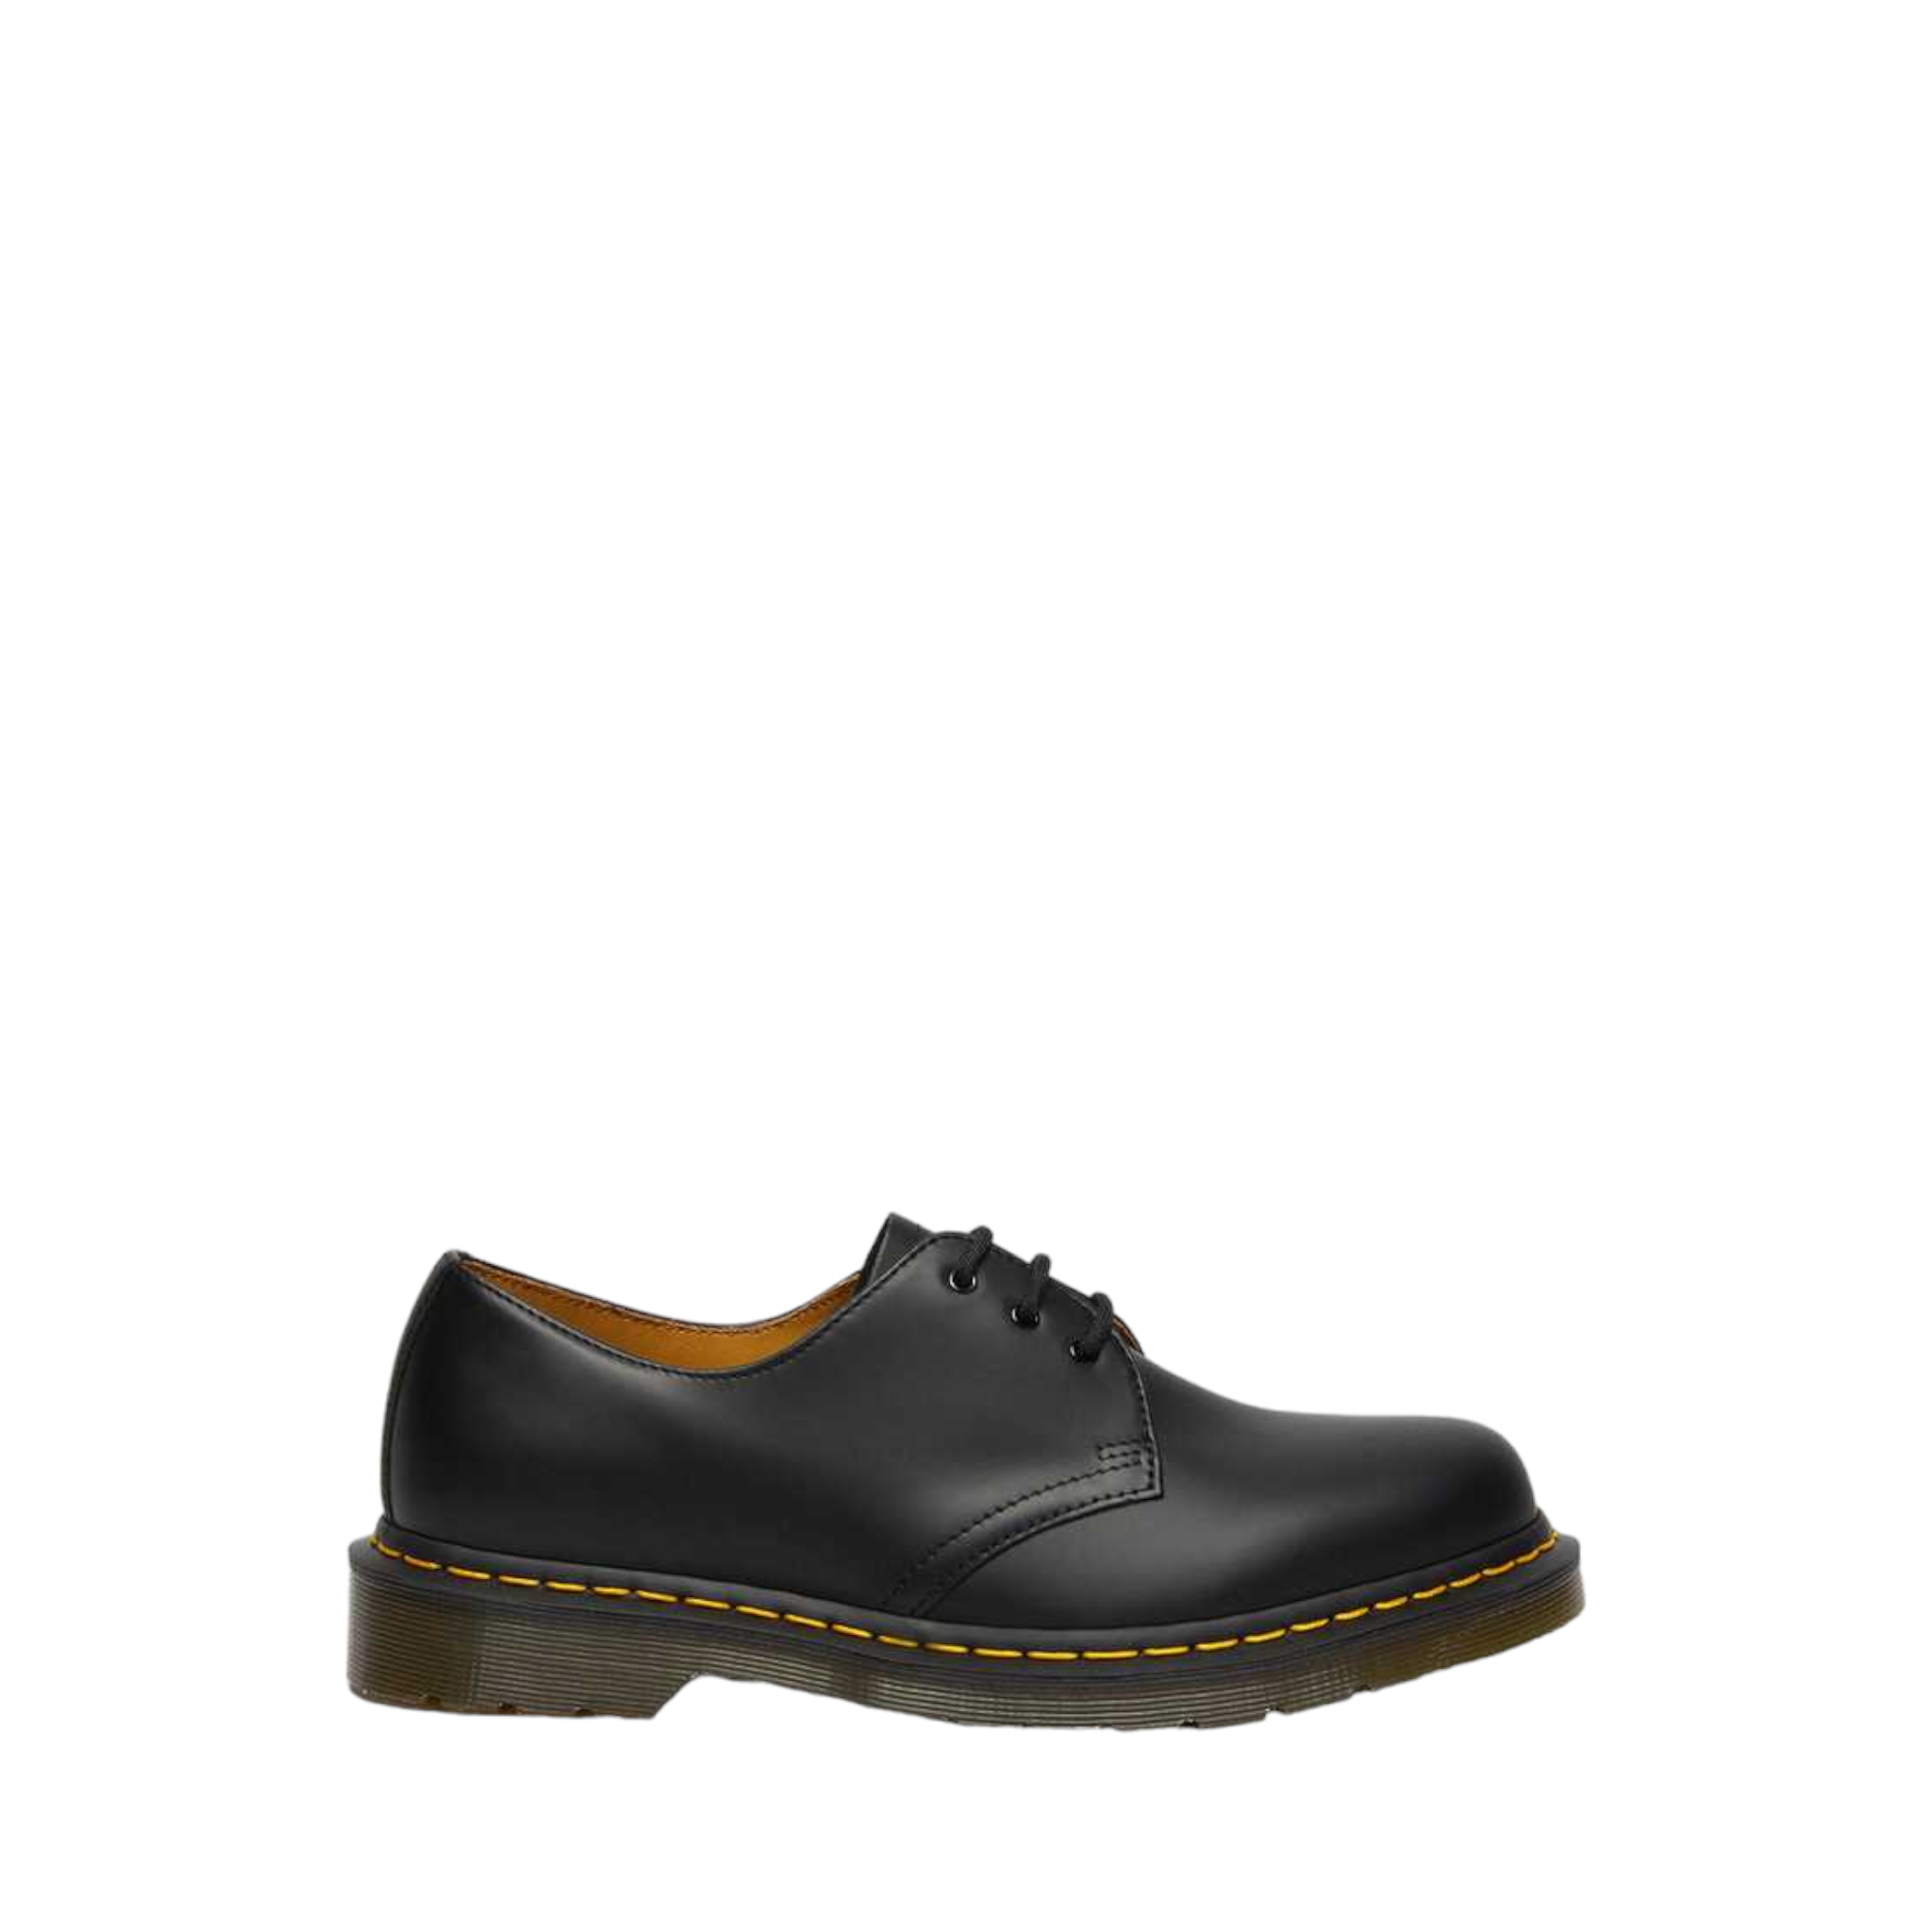 1461 - shoe&me - Dr. Martens - Shoes - Mens, Shoe, Unisex, Womens